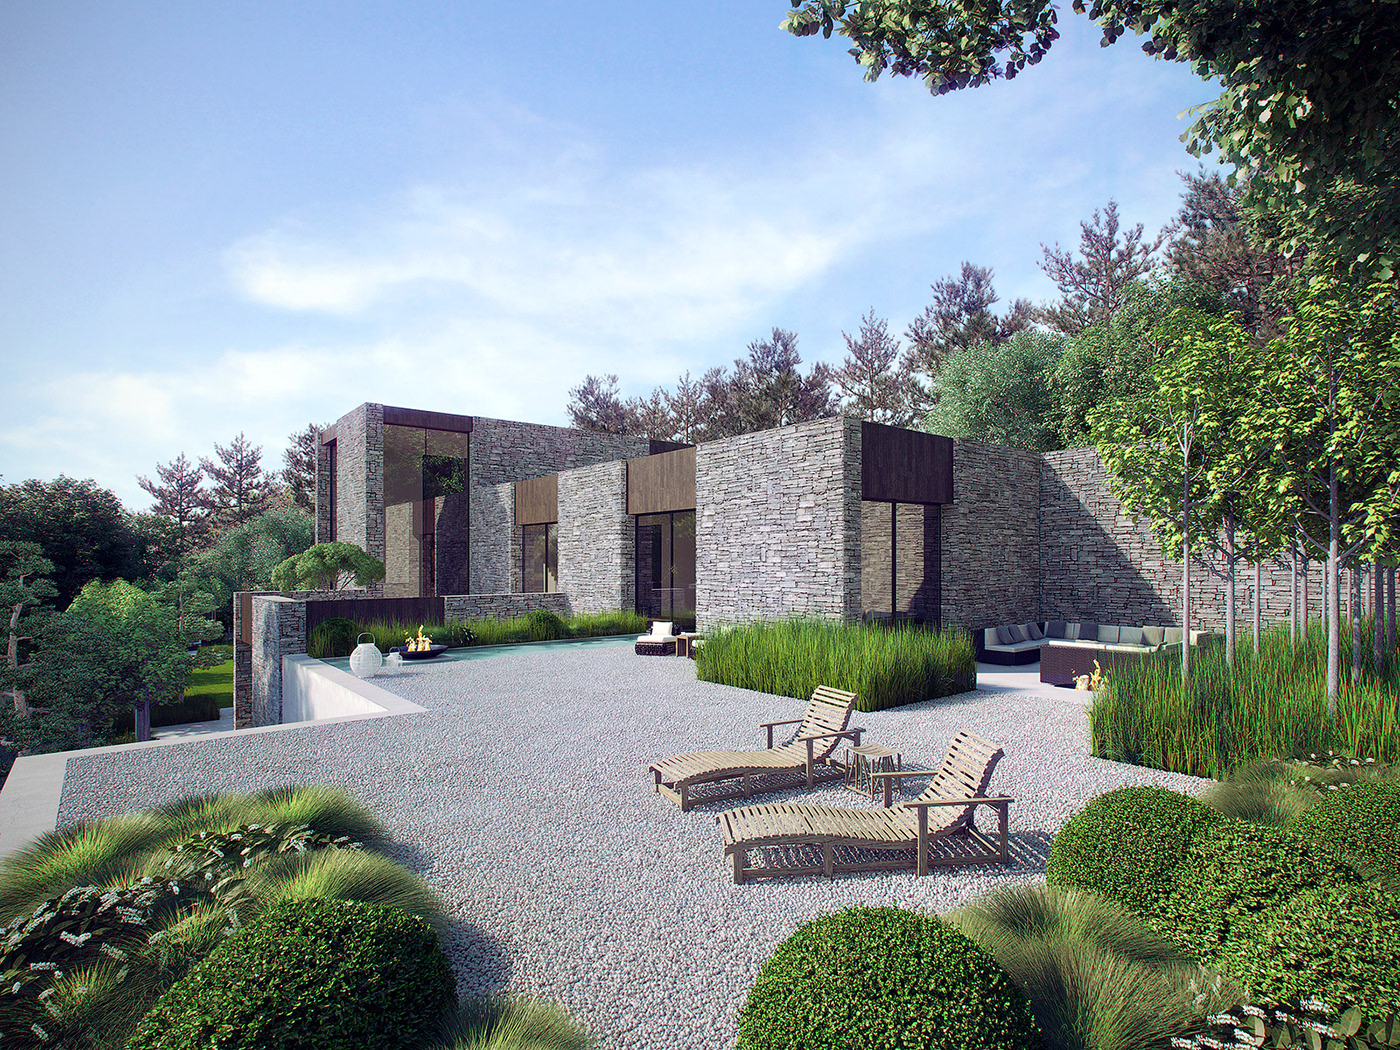 CGI CG house luxury Landscape green garden wood forest pine Render